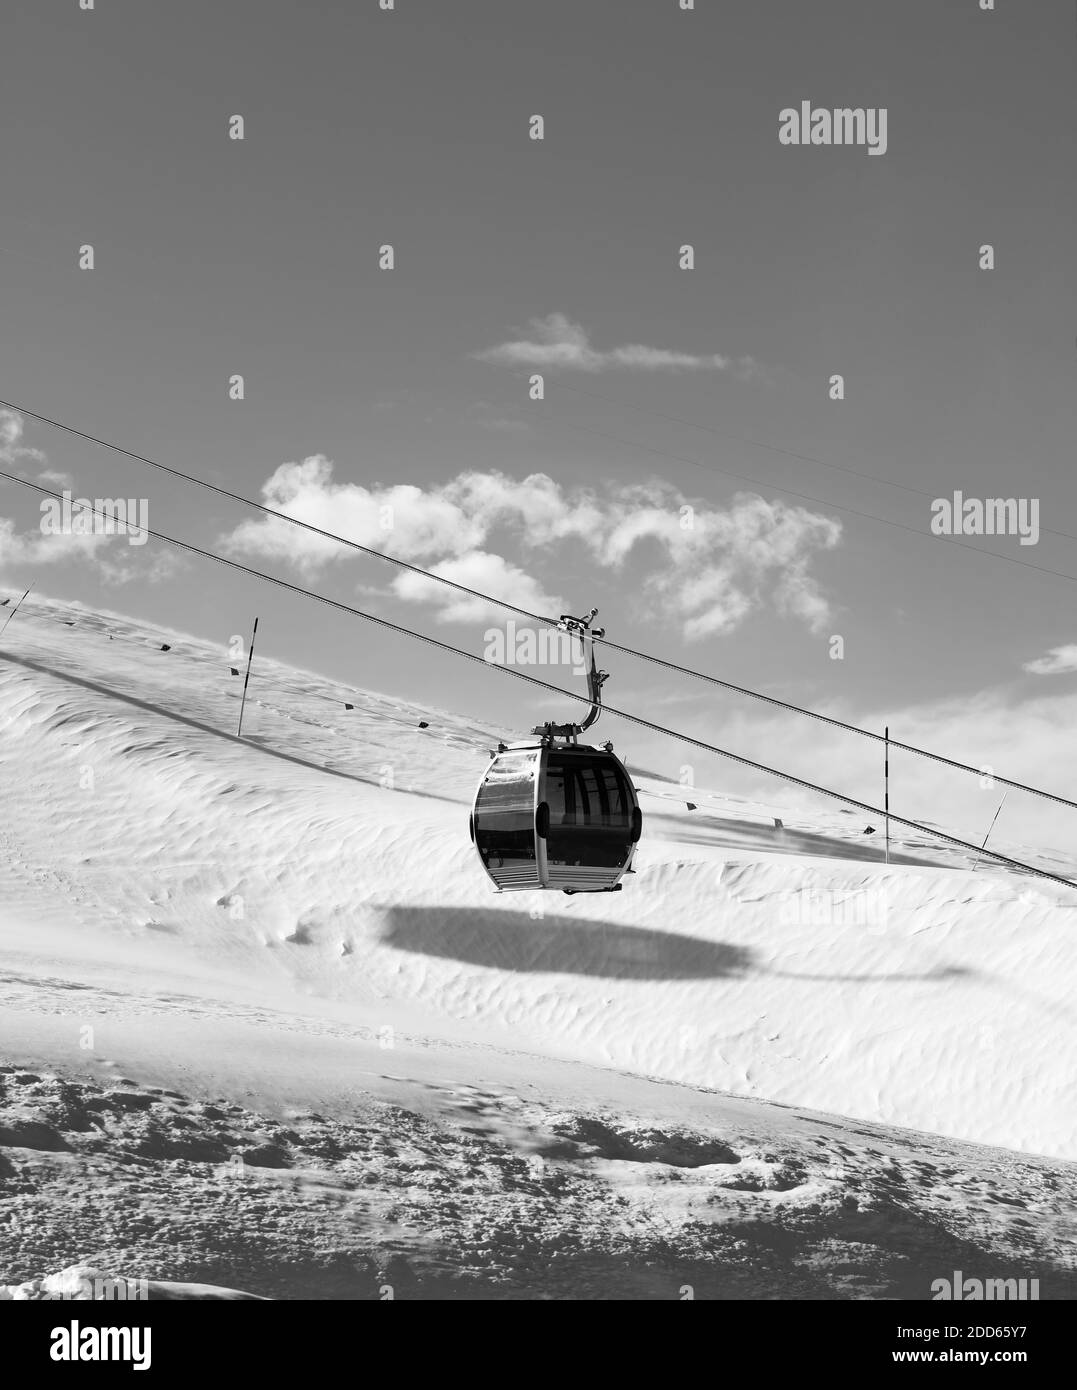 Piste innevate e gondola sulla stazione sciistica al sole ventoso giorno. Montagne del Caucaso in inverno, Shahdagh, Azerbaigian. Immagine in bianco e nero. Alta con Foto Stock